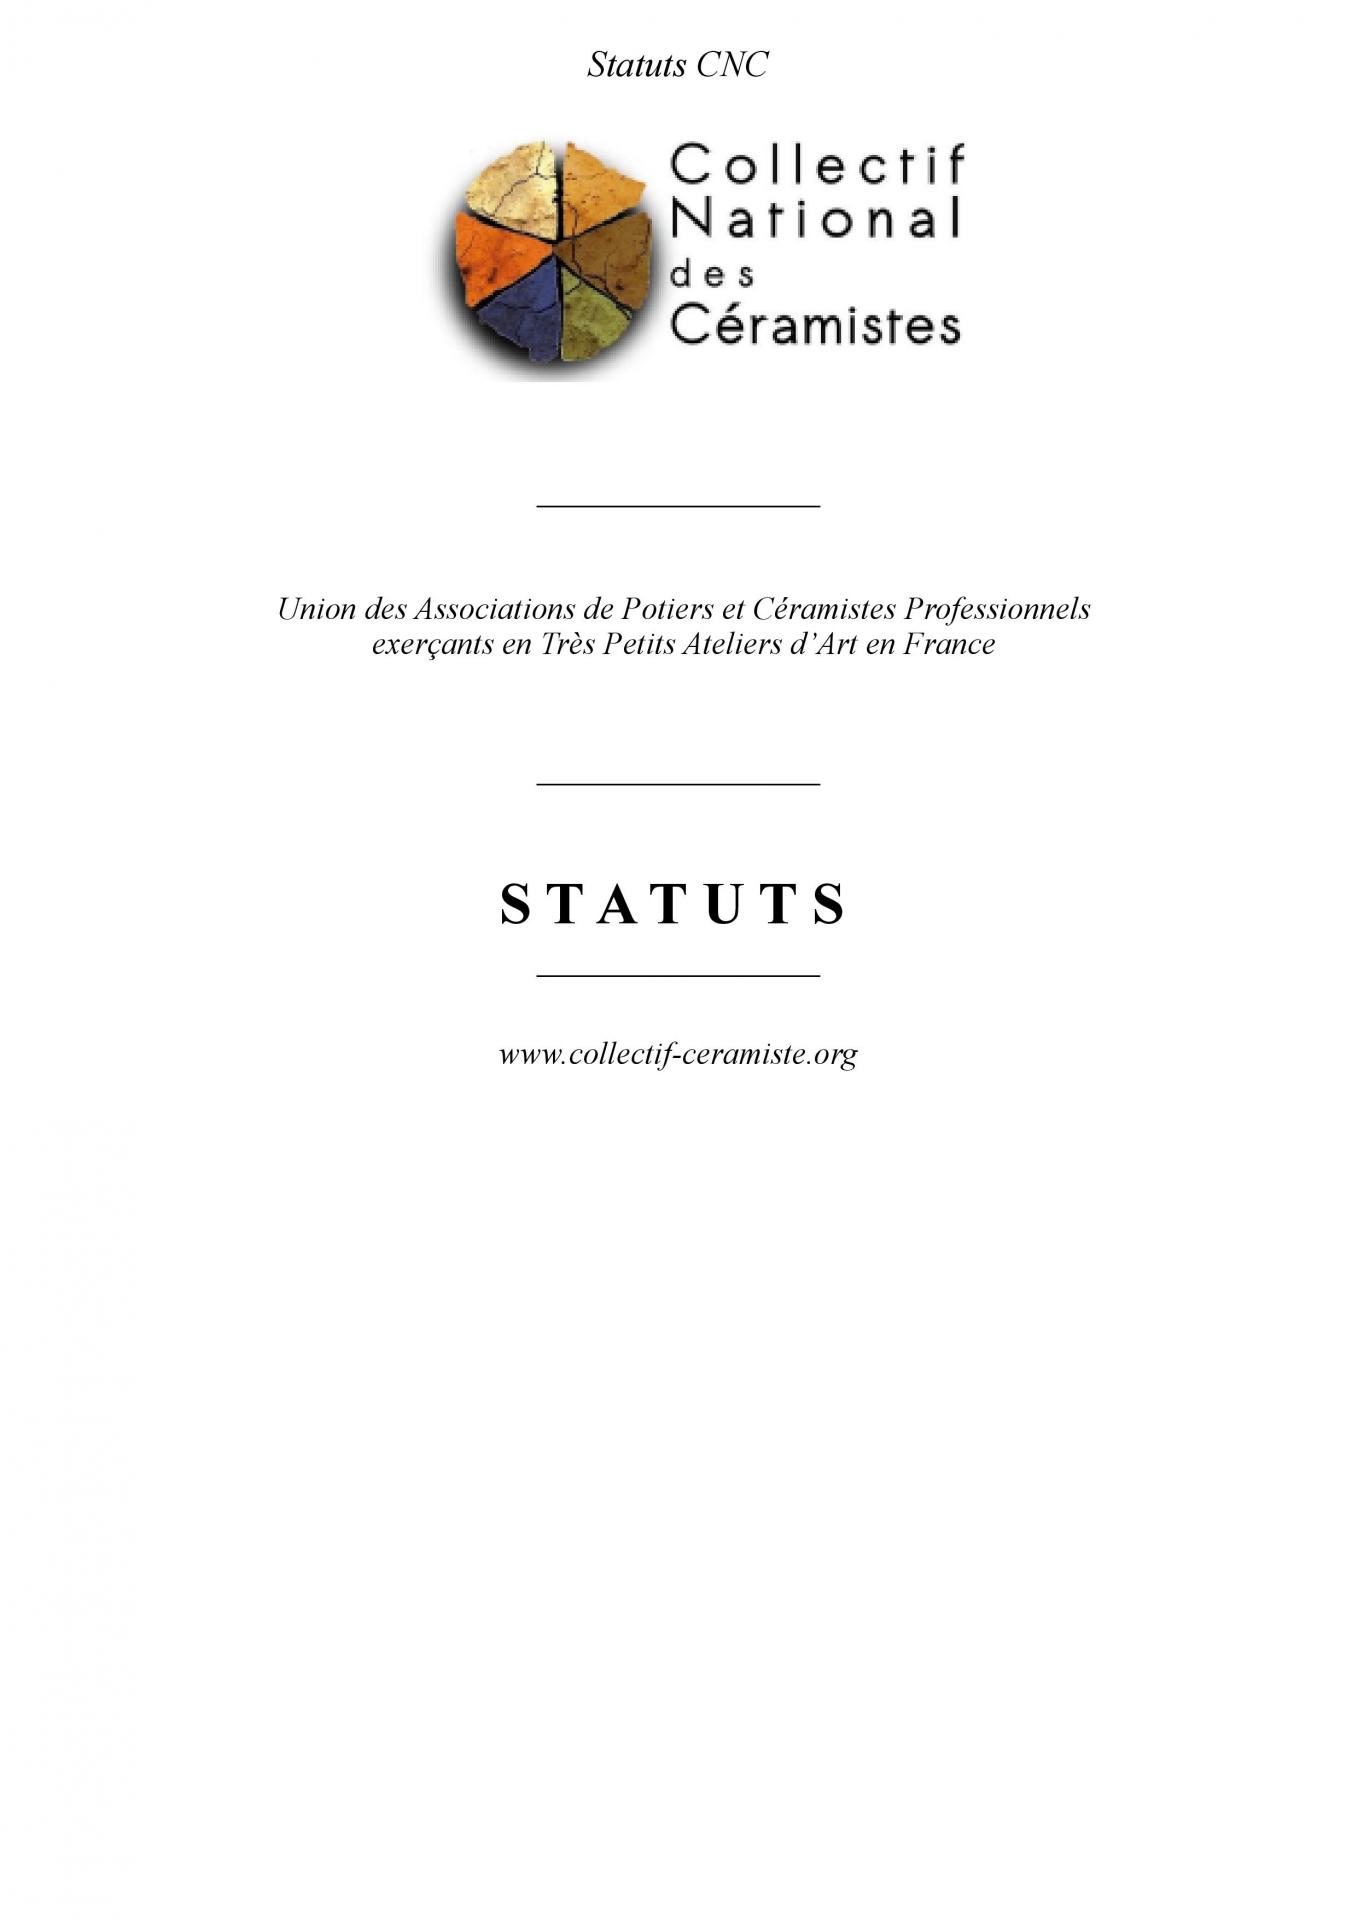 Statuts cnc 2023 signes schwerdorffer 42157 page 001